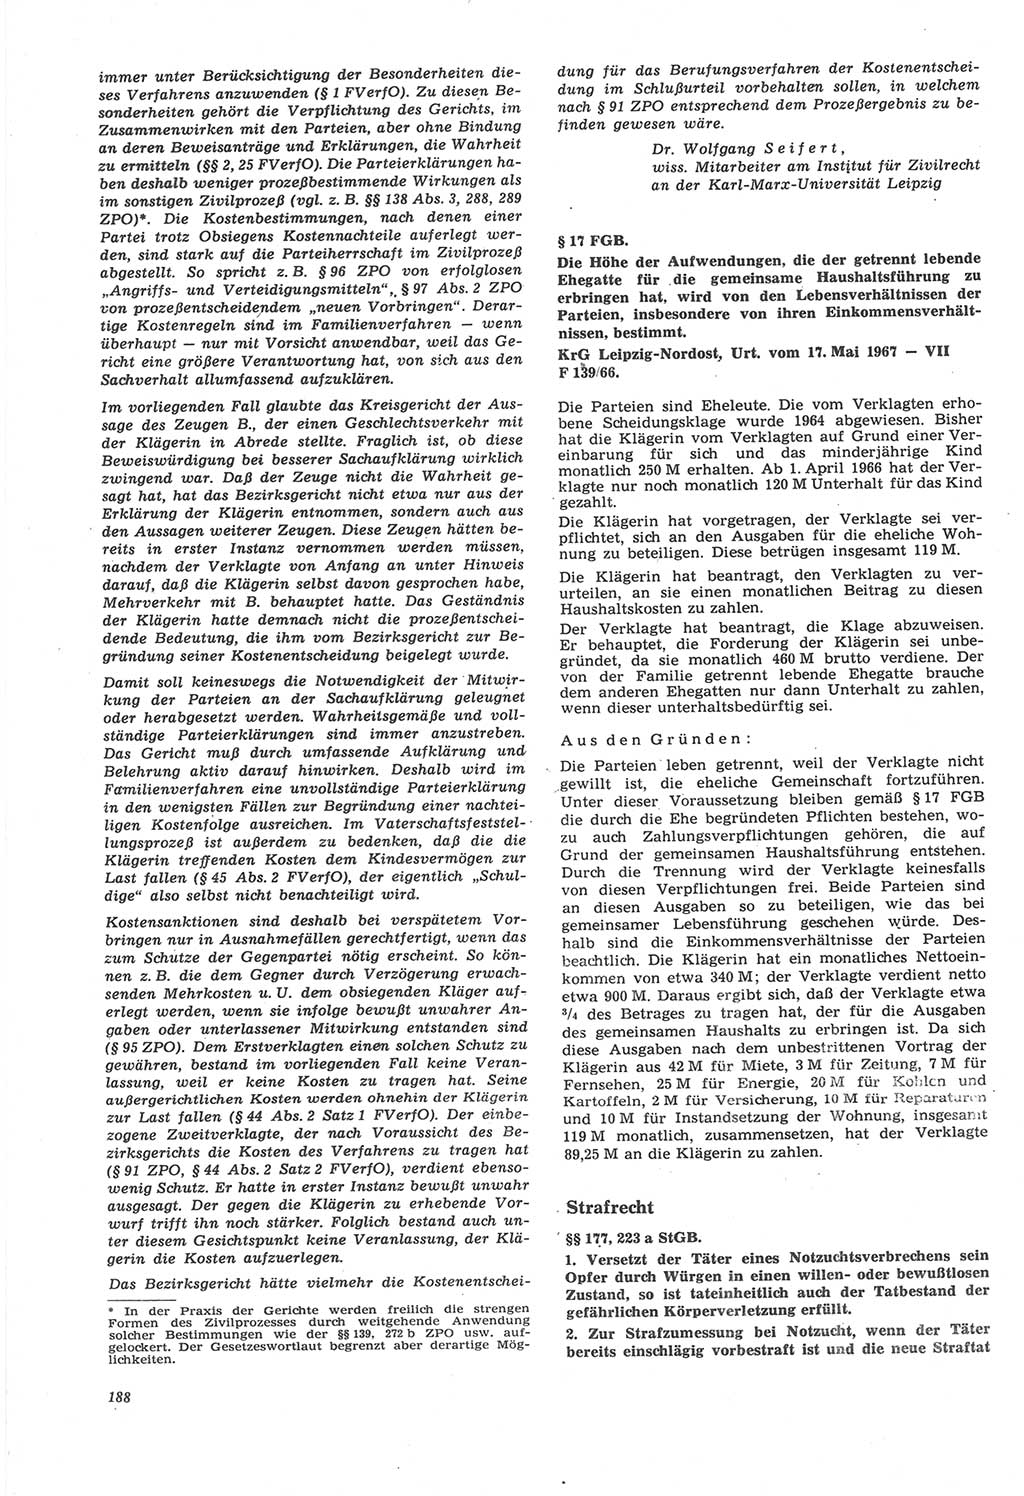 Neue Justiz (NJ), Zeitschrift für Recht und Rechtswissenschaft [Deutsche Demokratische Republik (DDR)], 22. Jahrgang 1968, Seite 188 (NJ DDR 1968, S. 188)